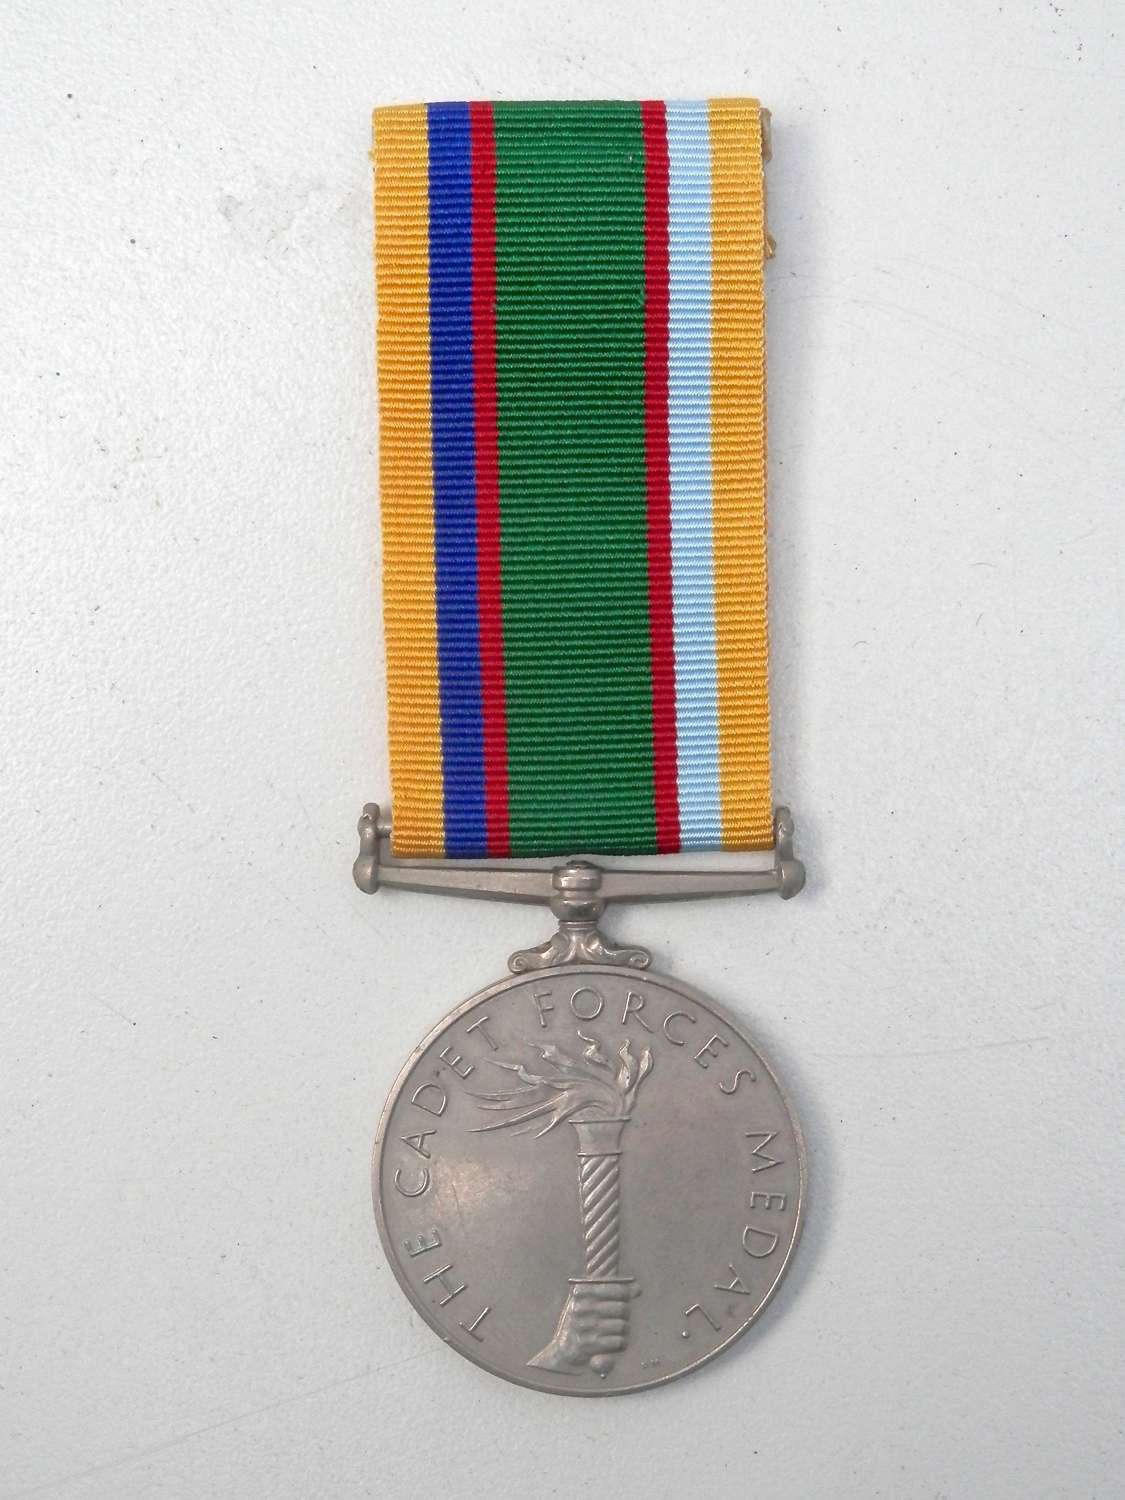 RAF / ATC cadet forces medal